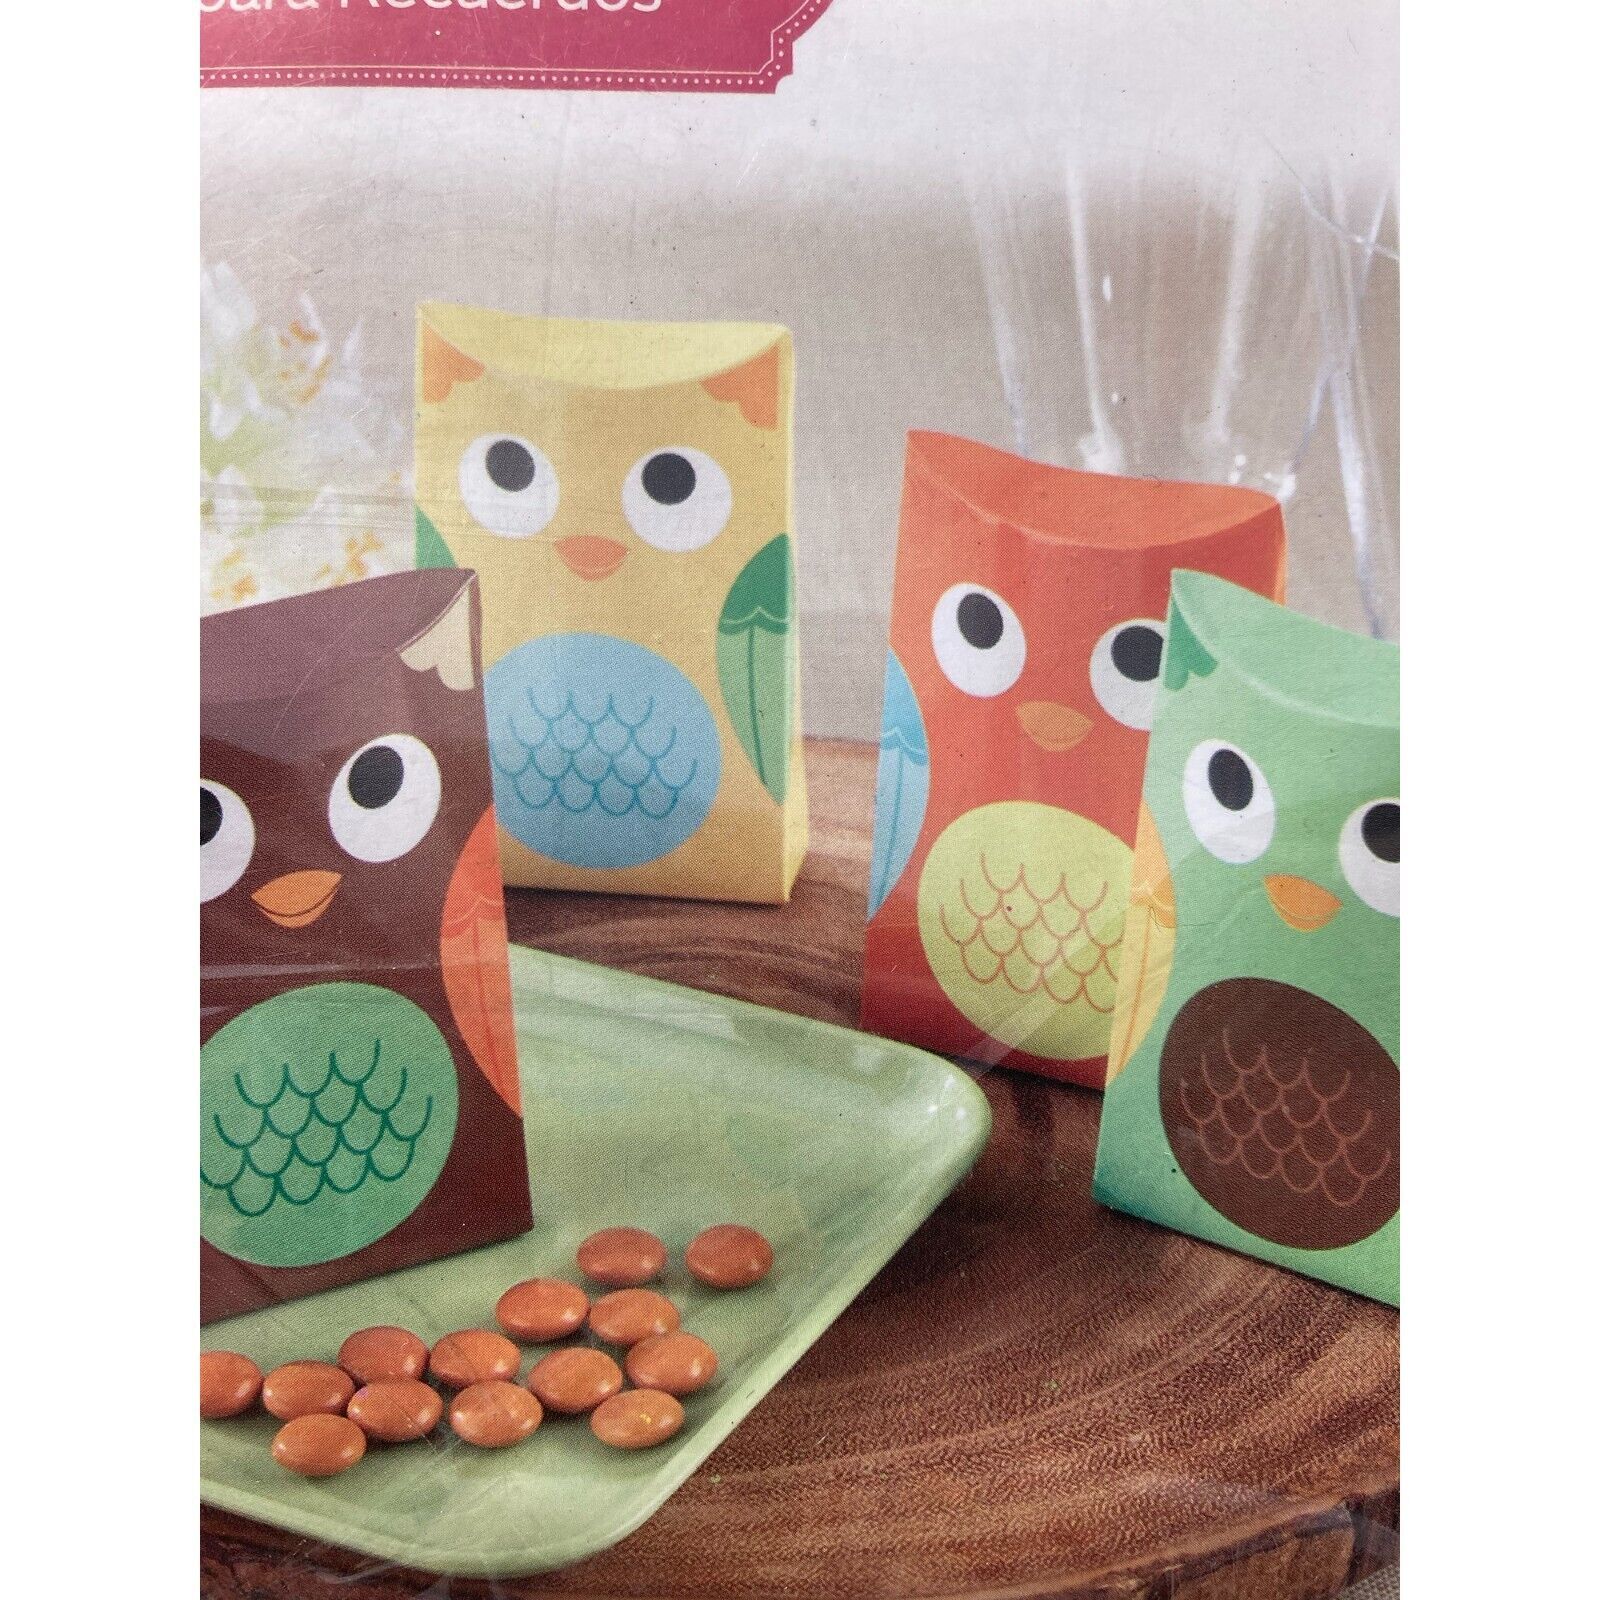 Kate Aspen 24 Pcs Paper Favor Box Kit Owl Multicolor Decor Gift Kids Packaging - $7.95